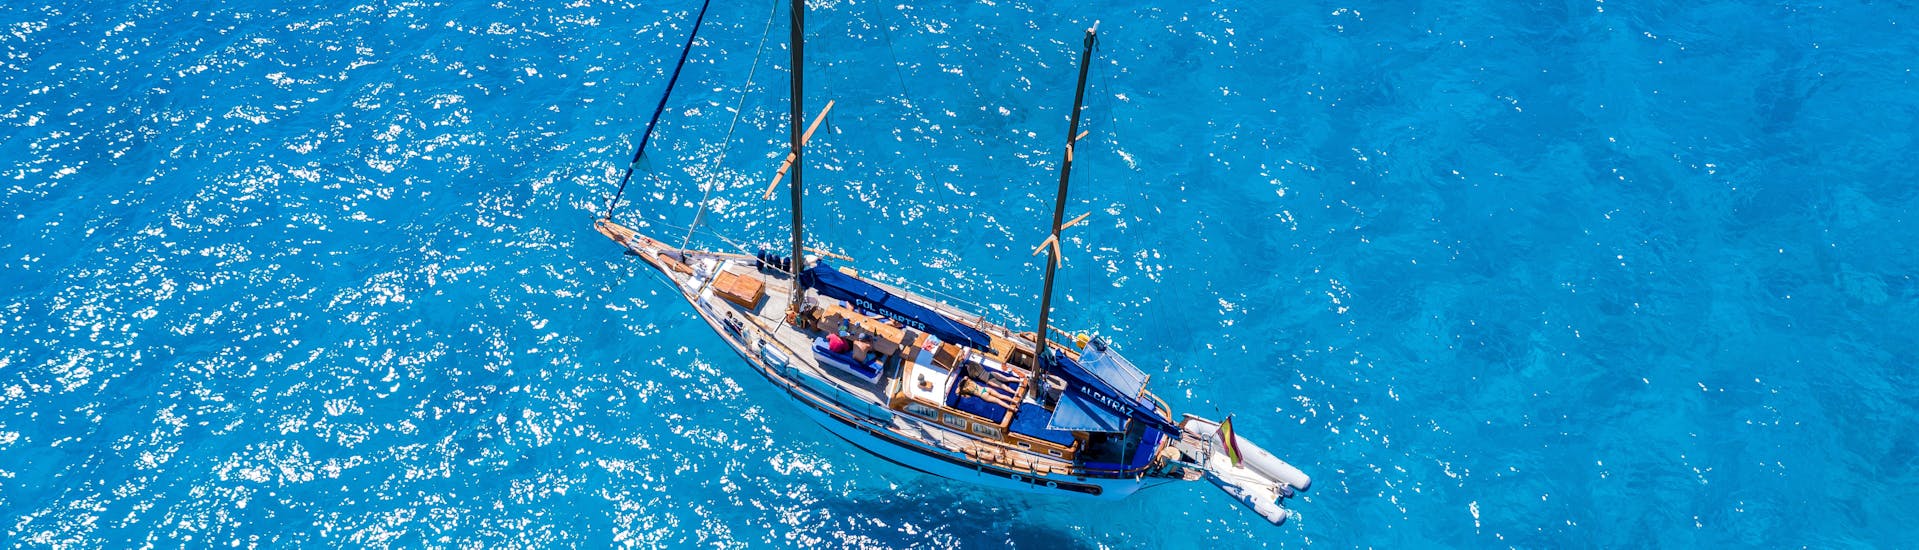 Excursión en barco de Pol Charters Mallorca en la Bahía de Palma con aperitivo y esnórquel.